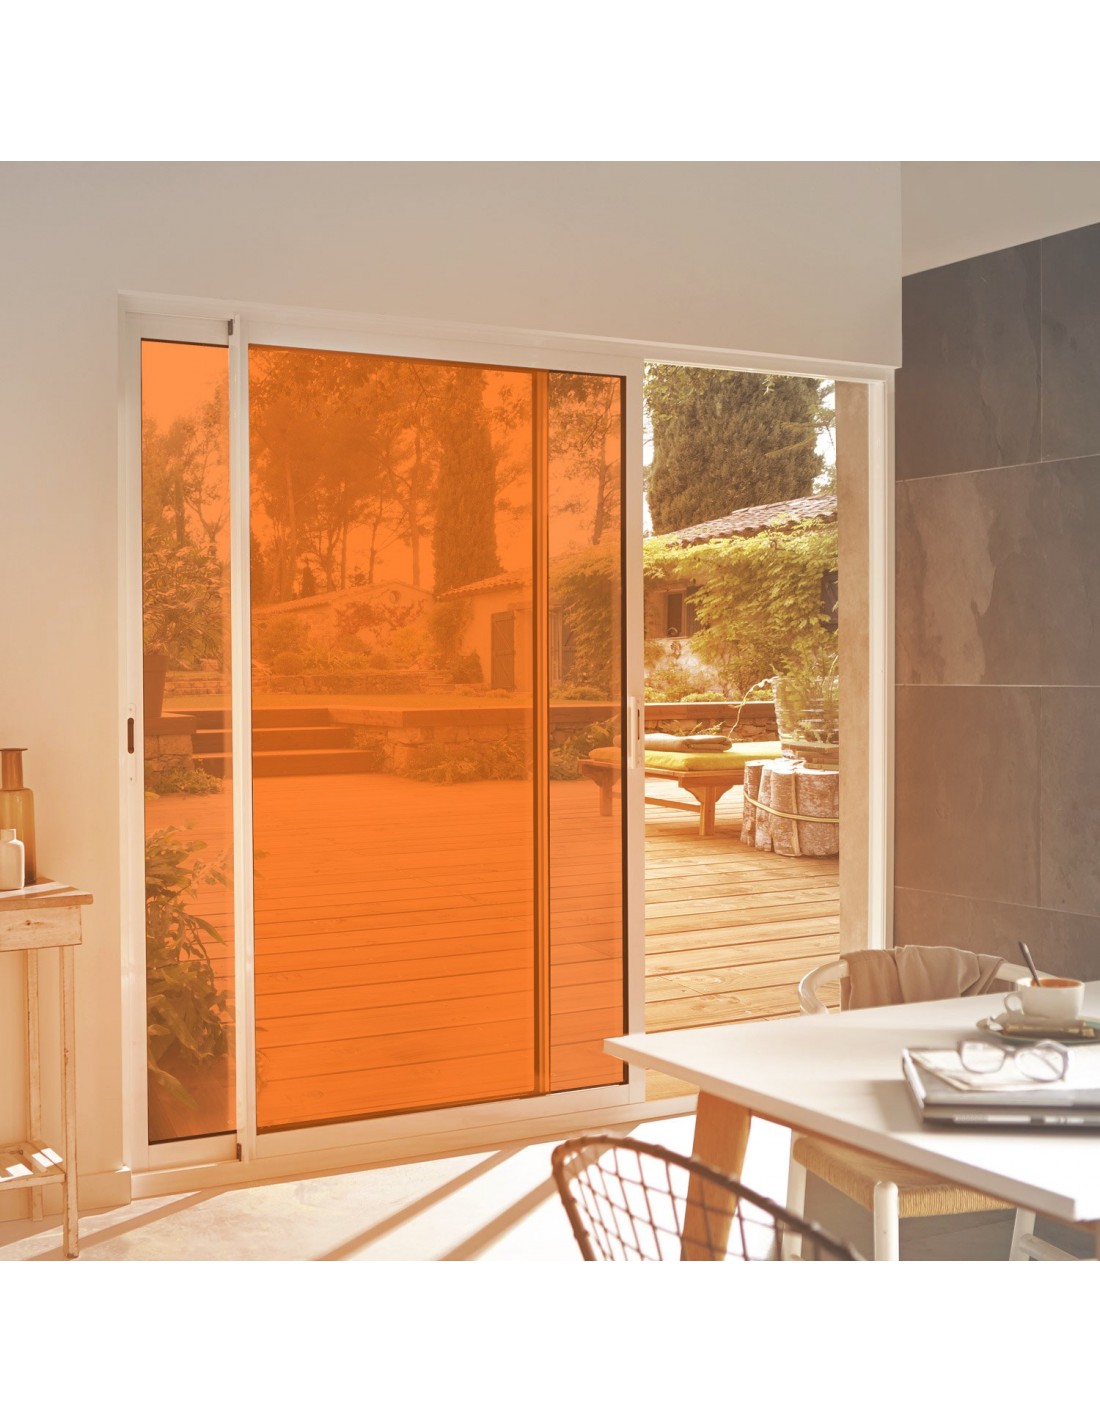 Film adhésif orange ultra transparent pour décoration surface vitrée